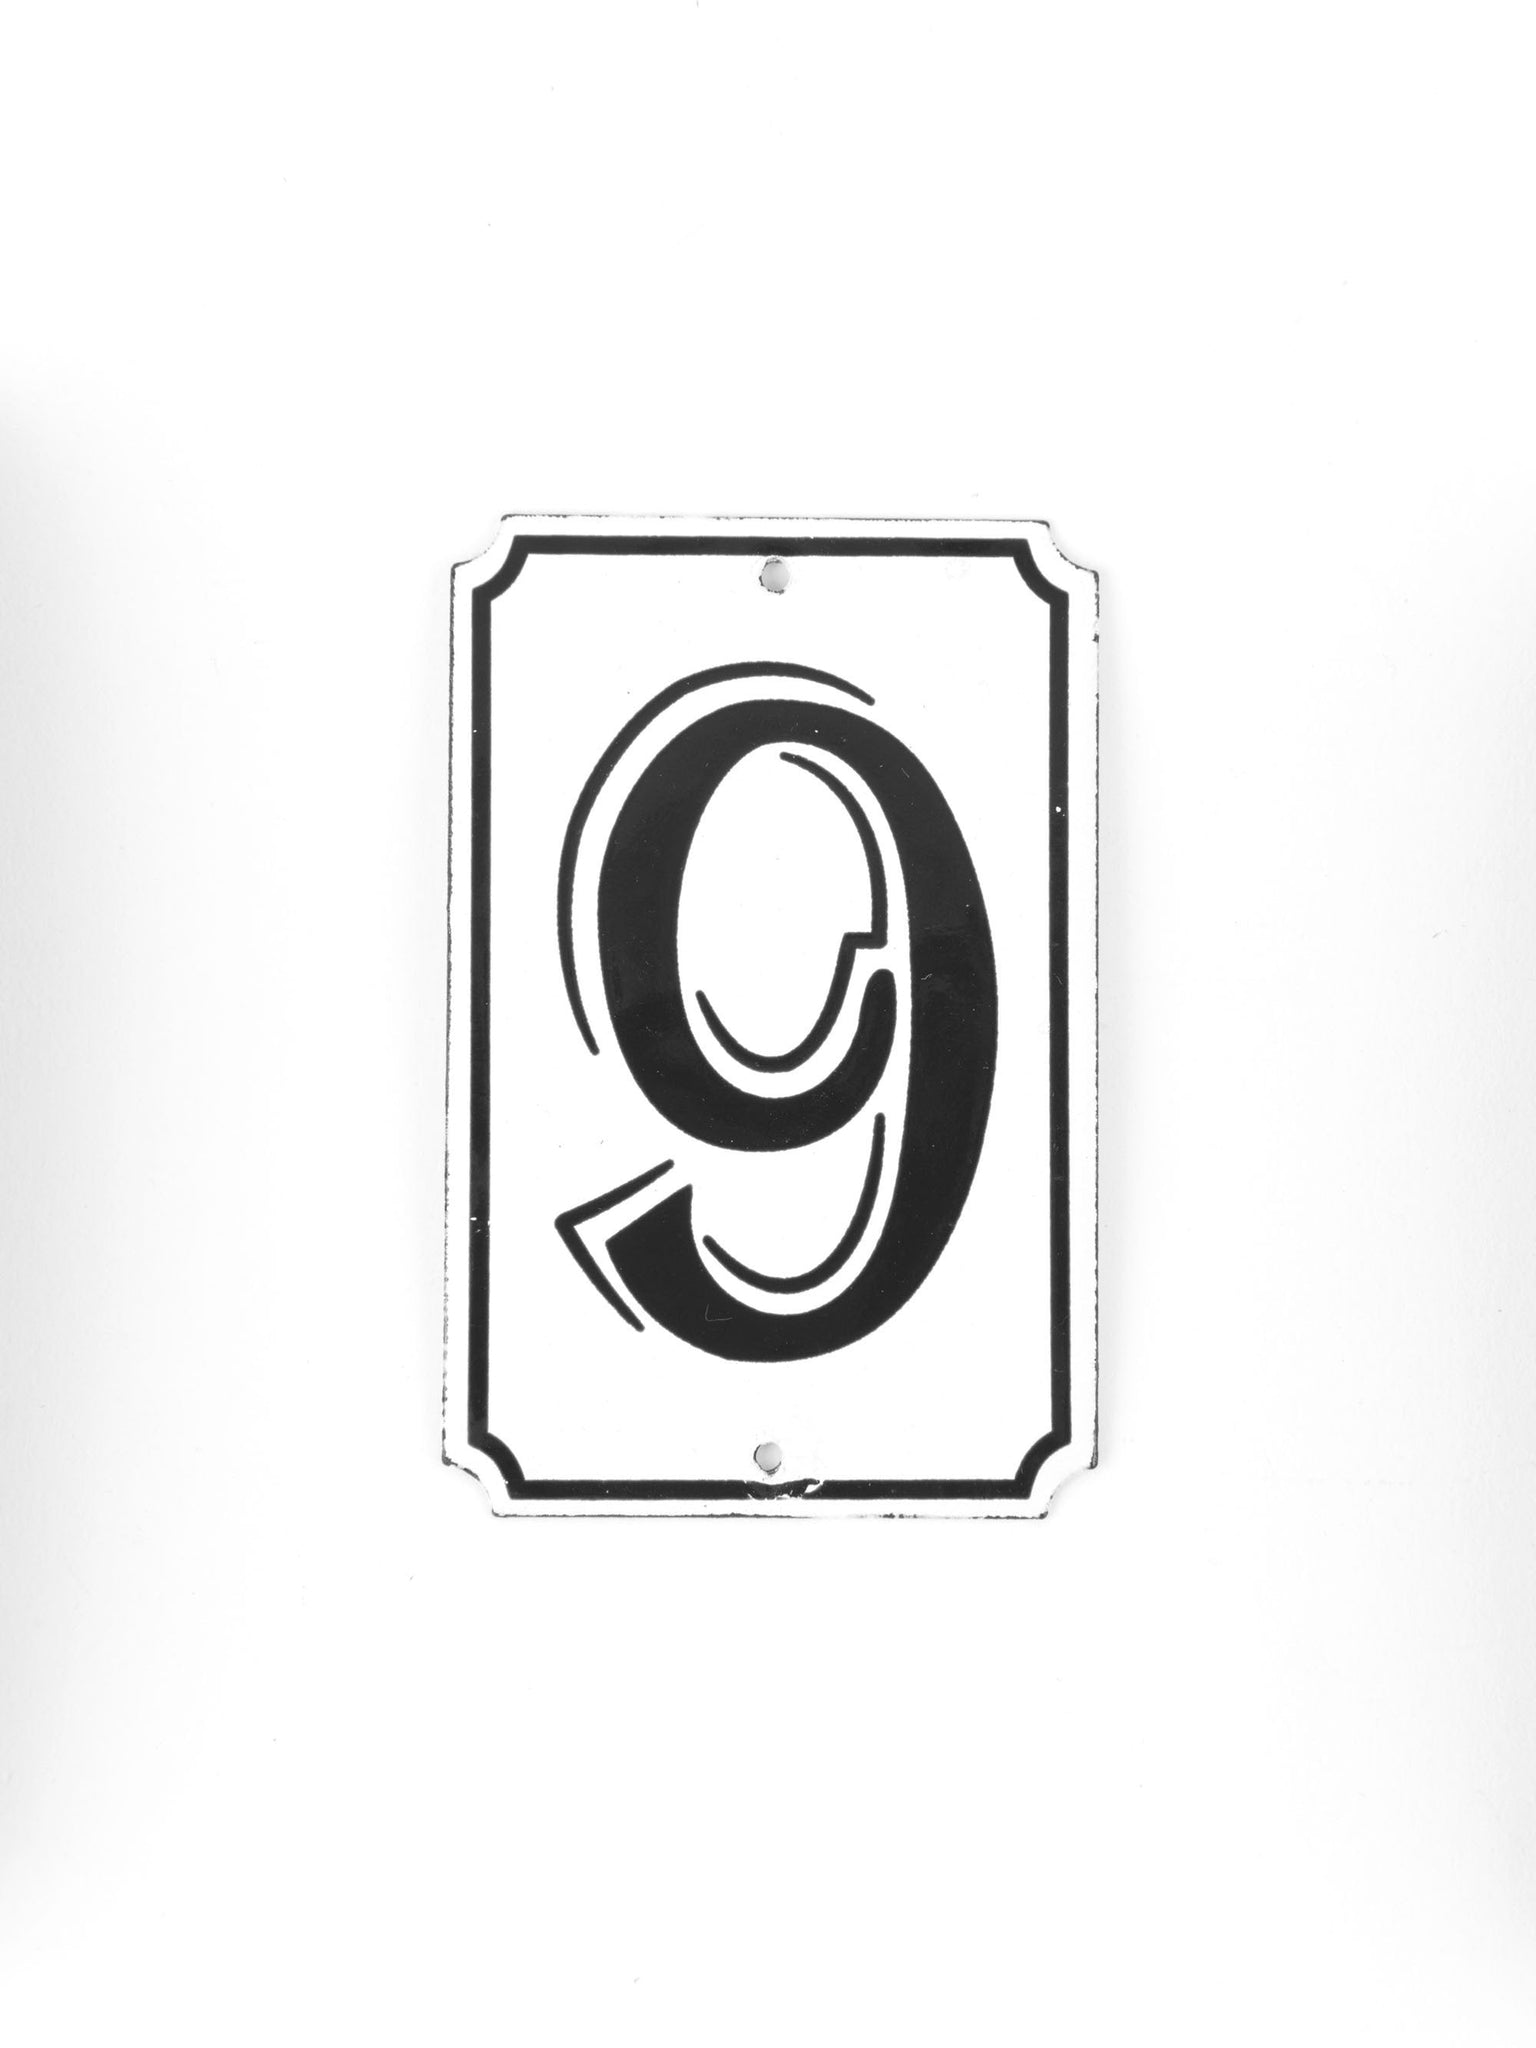 Orban & Sons Enamel Number Sign